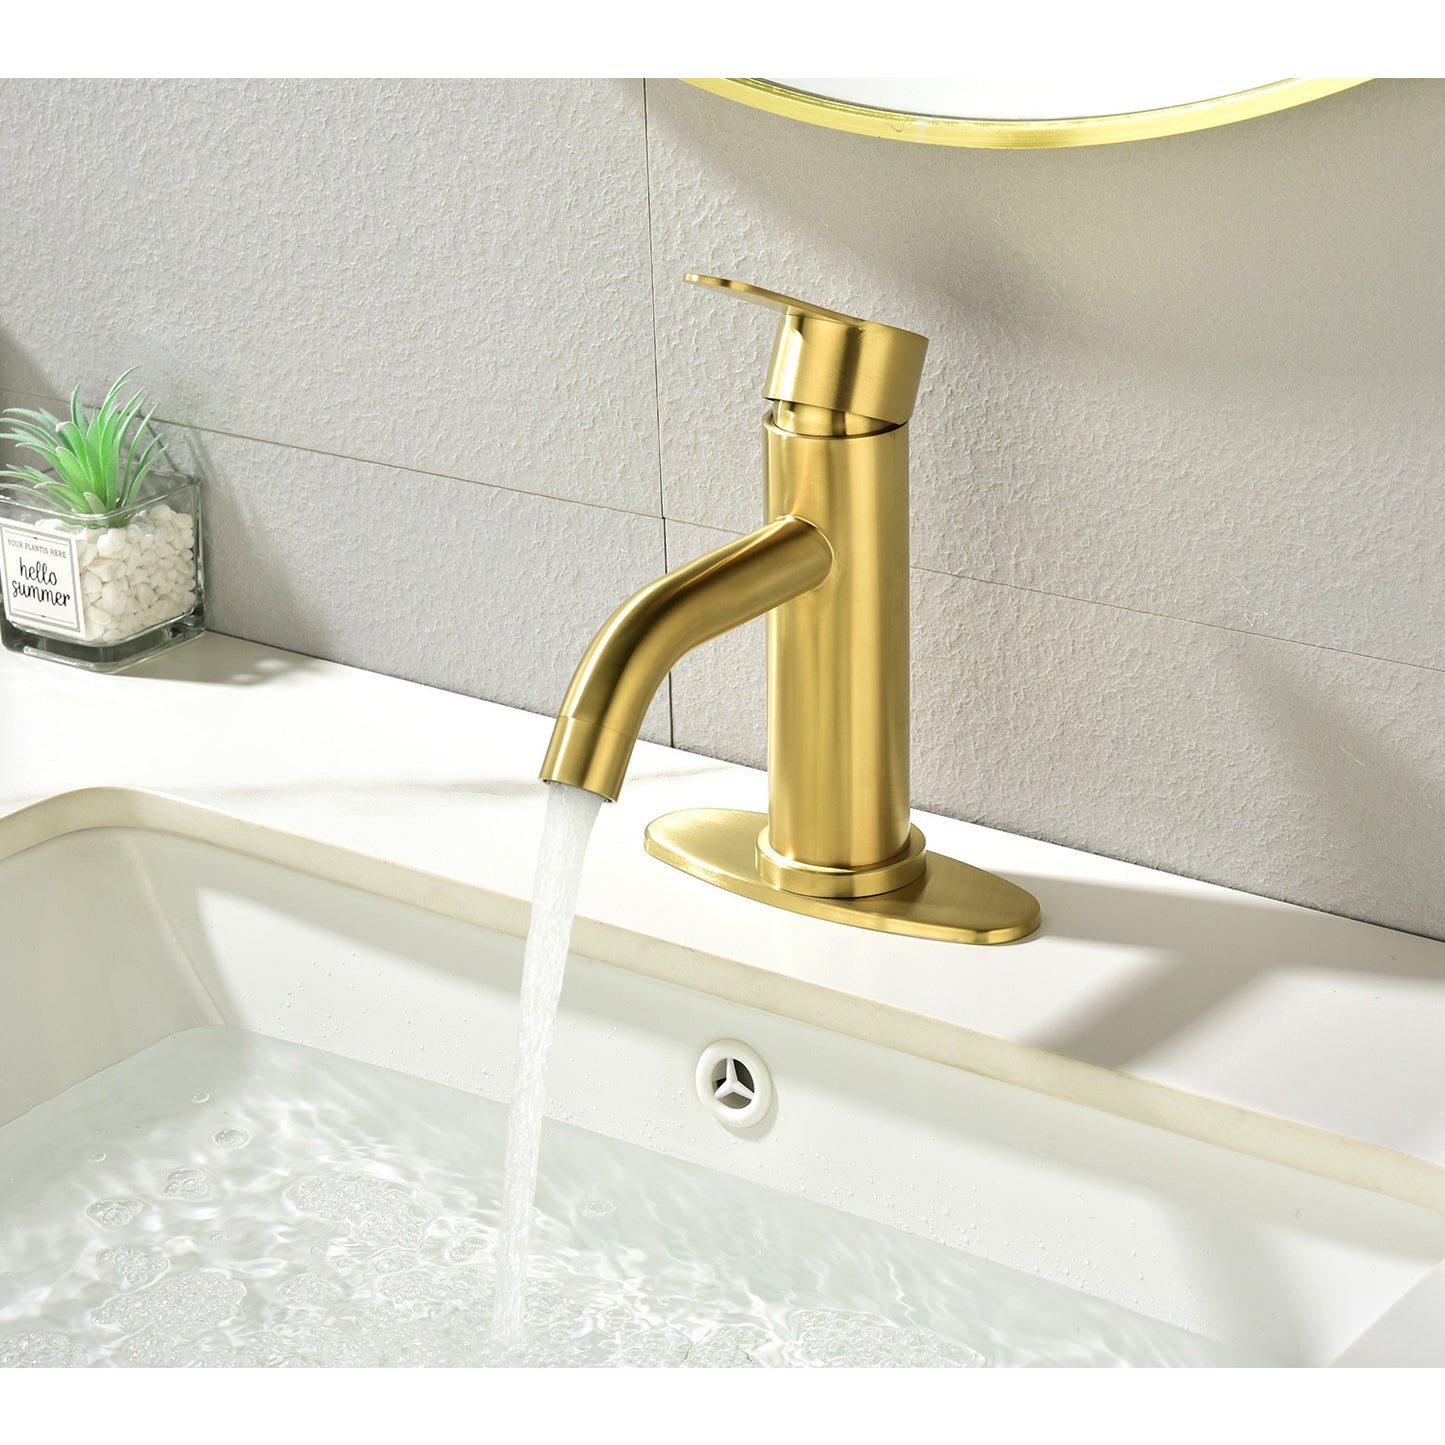 Sleek Bathroom Vanity Sink Faucet with Waterfall Spout